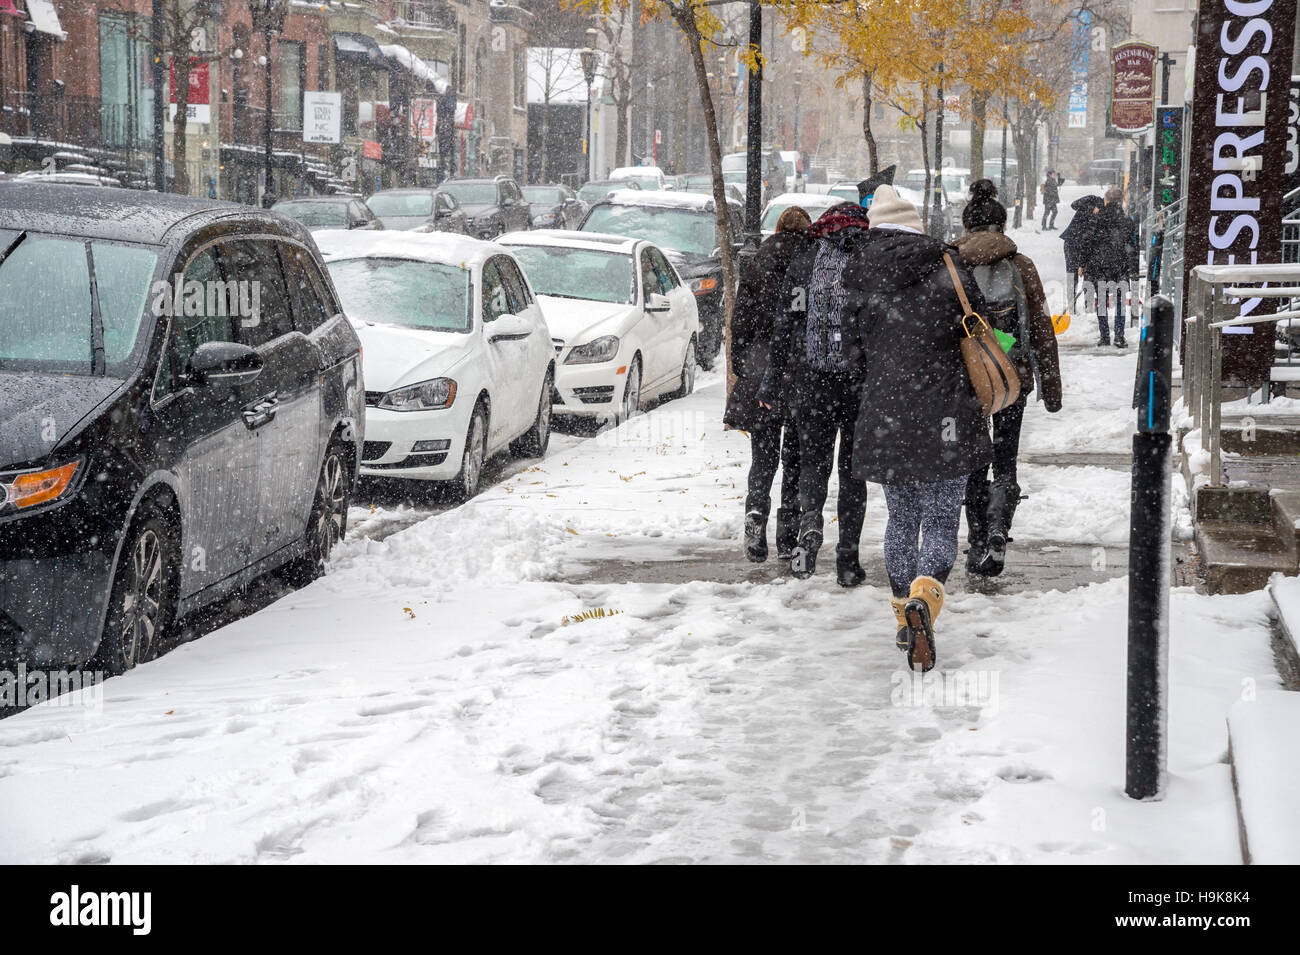 Montreal, CA - 21. November 2016: erste Schnee der Saison trifft die Stadt. Fußgänger im Geschaeftsviertel. Stockfoto